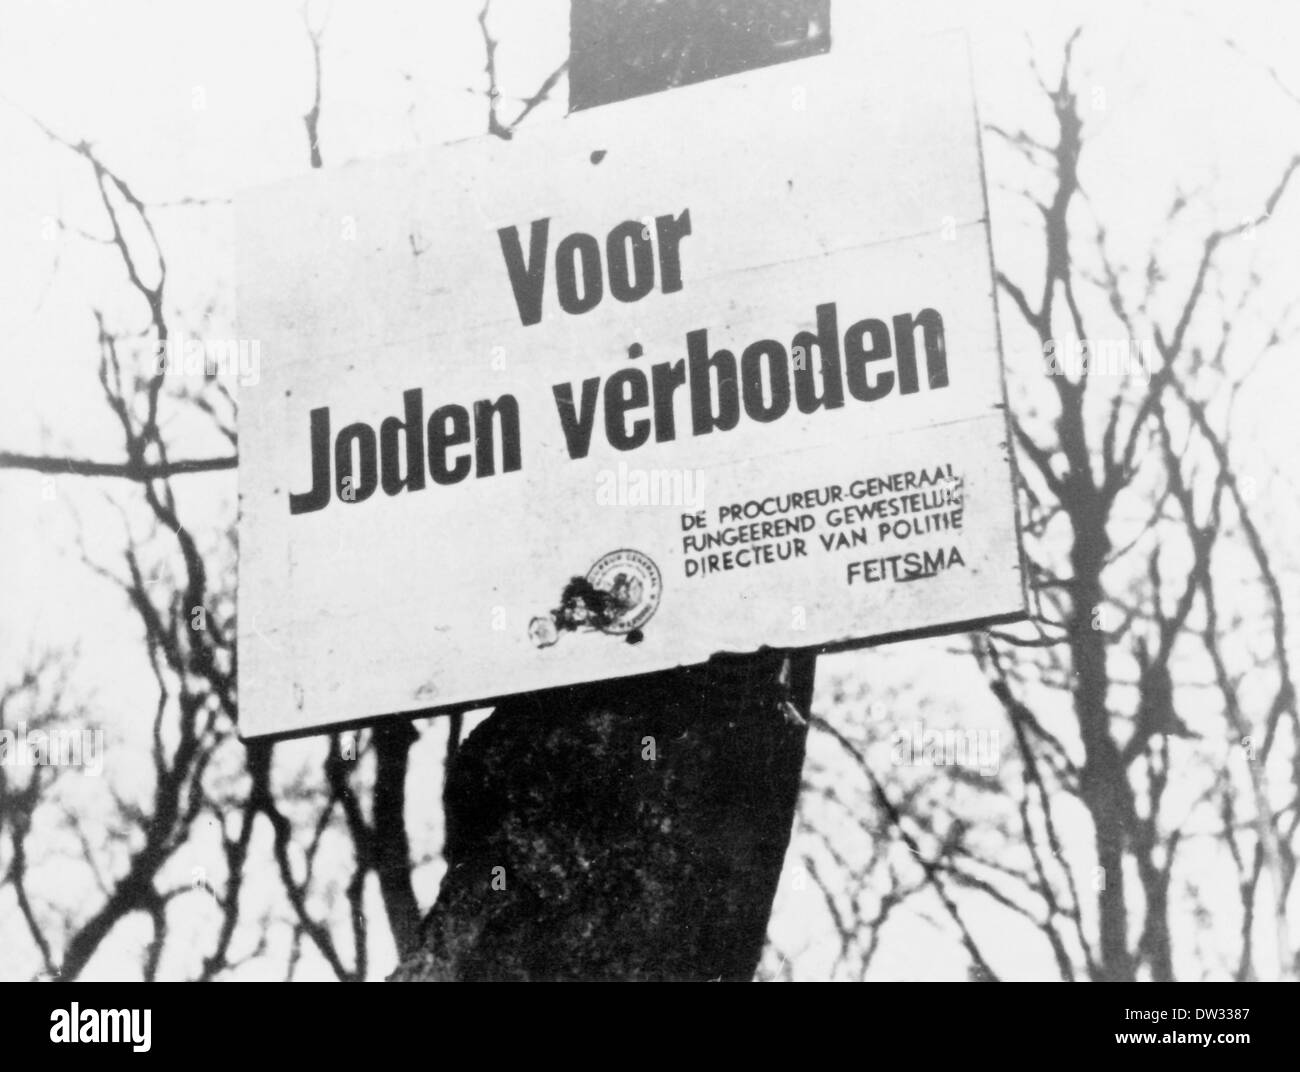 Nach der Besetzung der Niederlande durch die deutsche Wehrmacht im Jahr 1940 hängt ein Verbotsschild mit der Aufschrift "voor Joden verboden" ("Verboten für Juden"), das vom Amsterdamer "Procureur-generaal" (Generalstaatsanwalt) unterzeichnet wurde, Jan Feitsma an einem Baum, Datum und Ort, der unbekannt ist. Fotoarchiv für Zeitgeschichtee / KEIN KABELDIENST Stockfoto